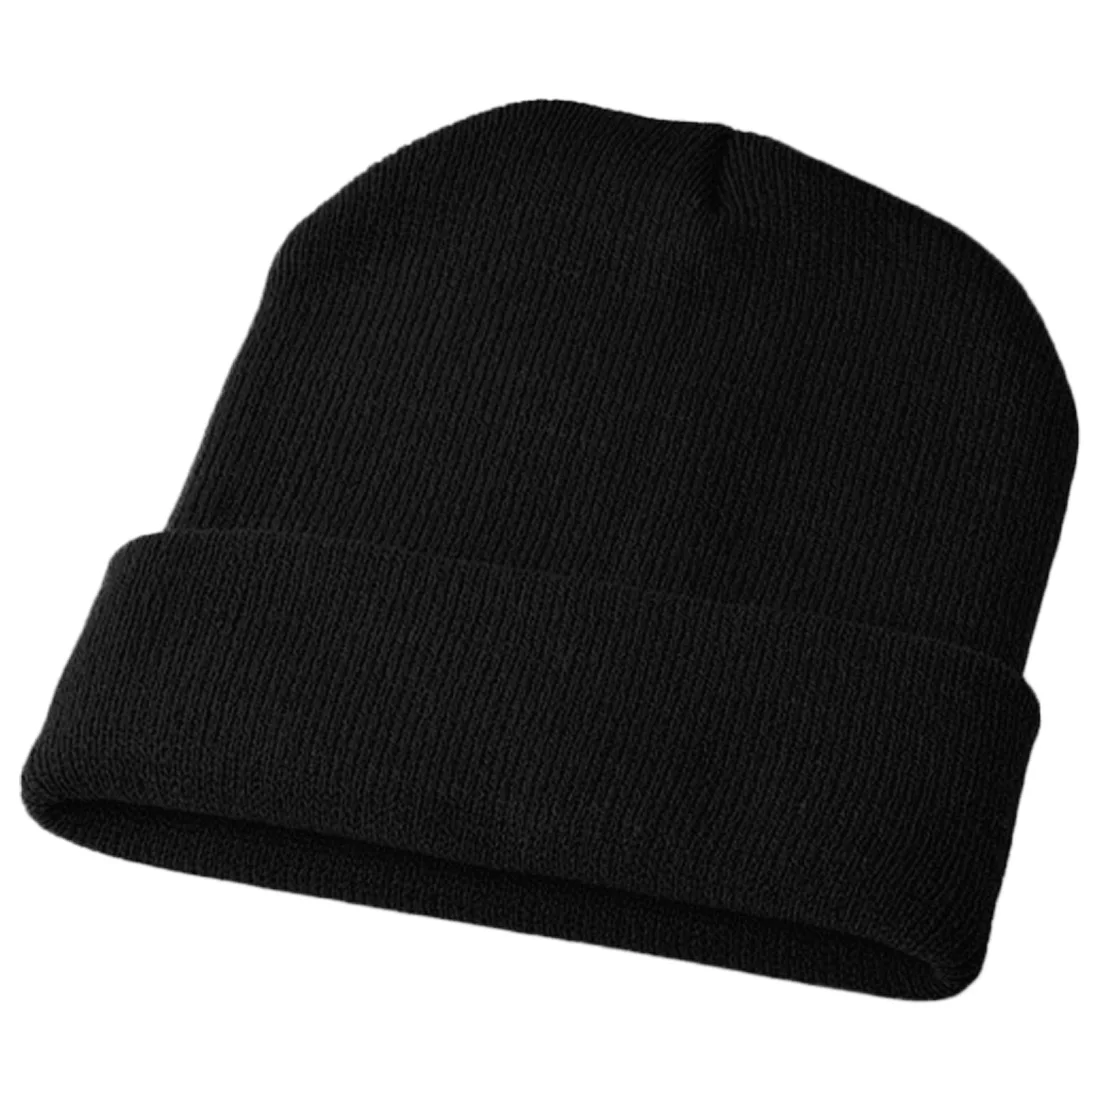 Популярная теплая шерстяная шапка для женщин и мужчин Harajuku флуоресцентный пуловер и шапка осенне-зимняя вязаная шапка ярких цветов BF